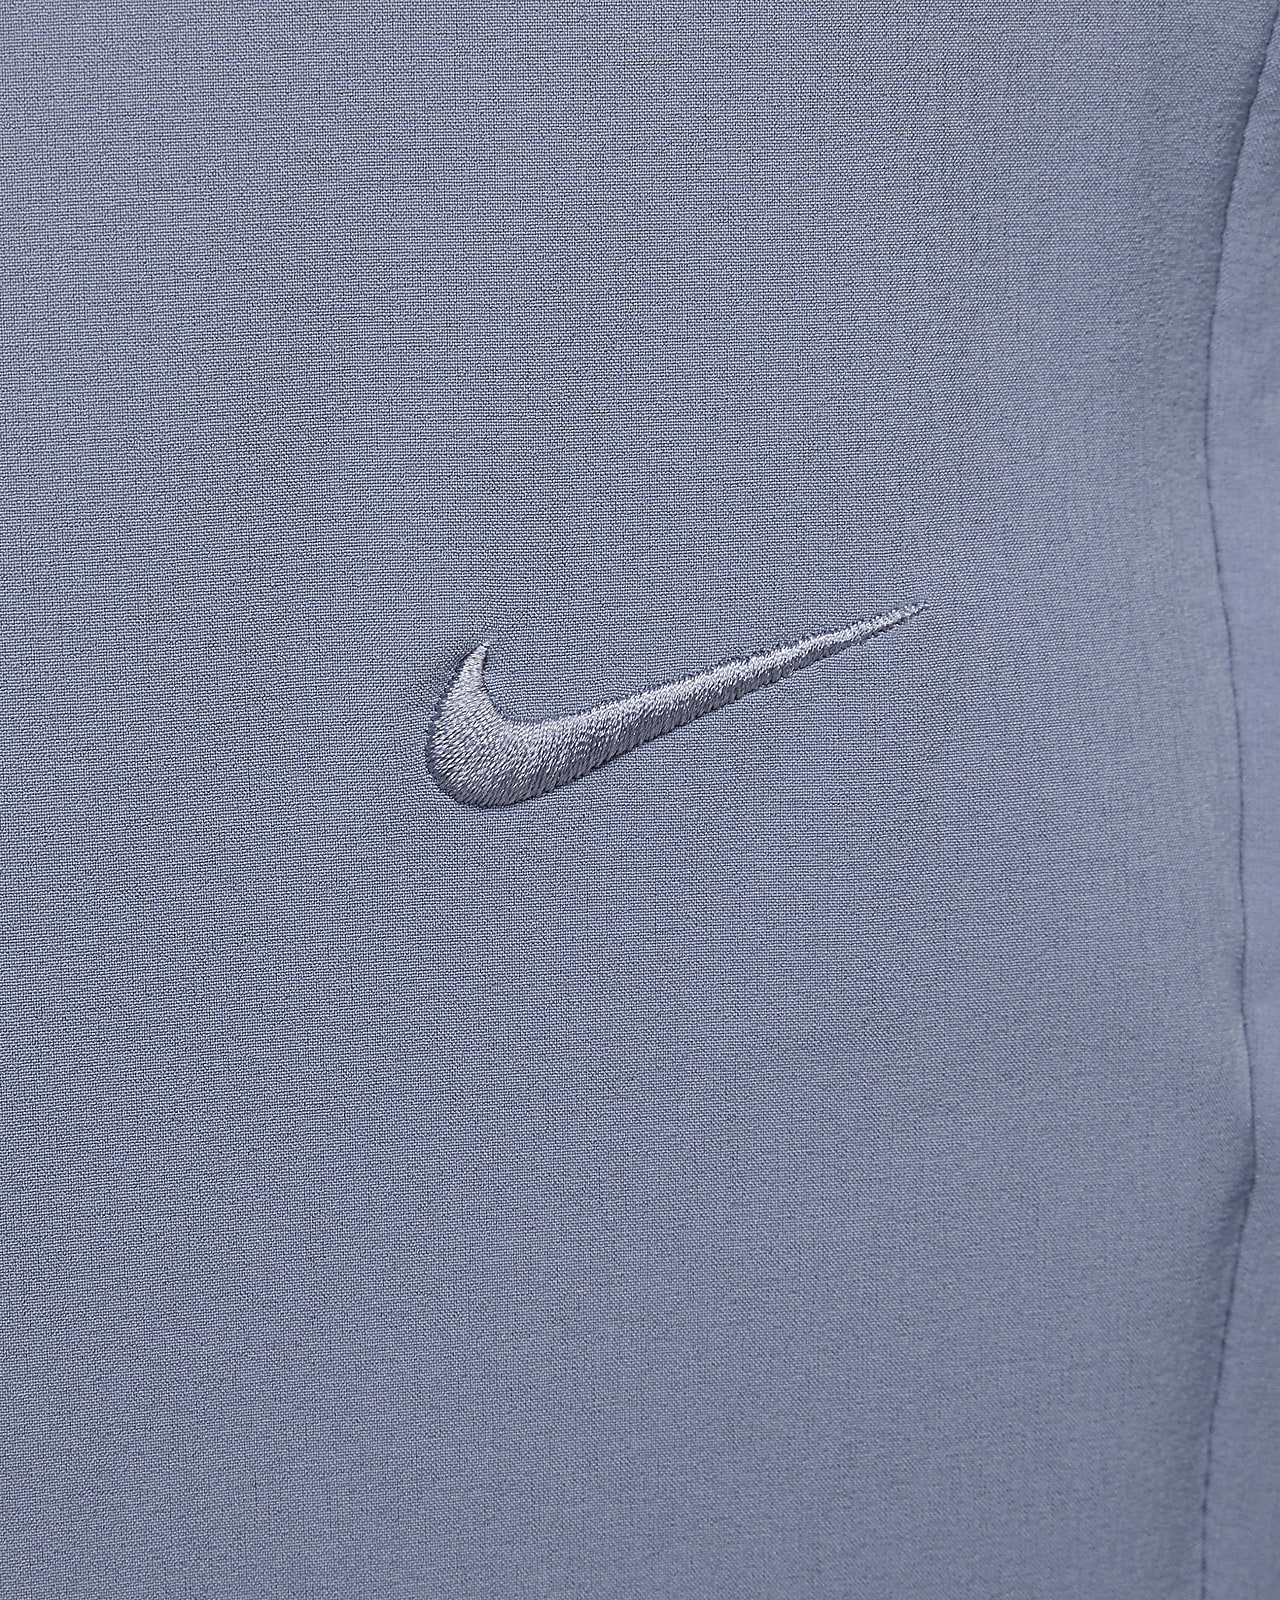 Nike Unlimited Men's Dri-FIT Zip Cuff Versatile Trousers. Nike CA